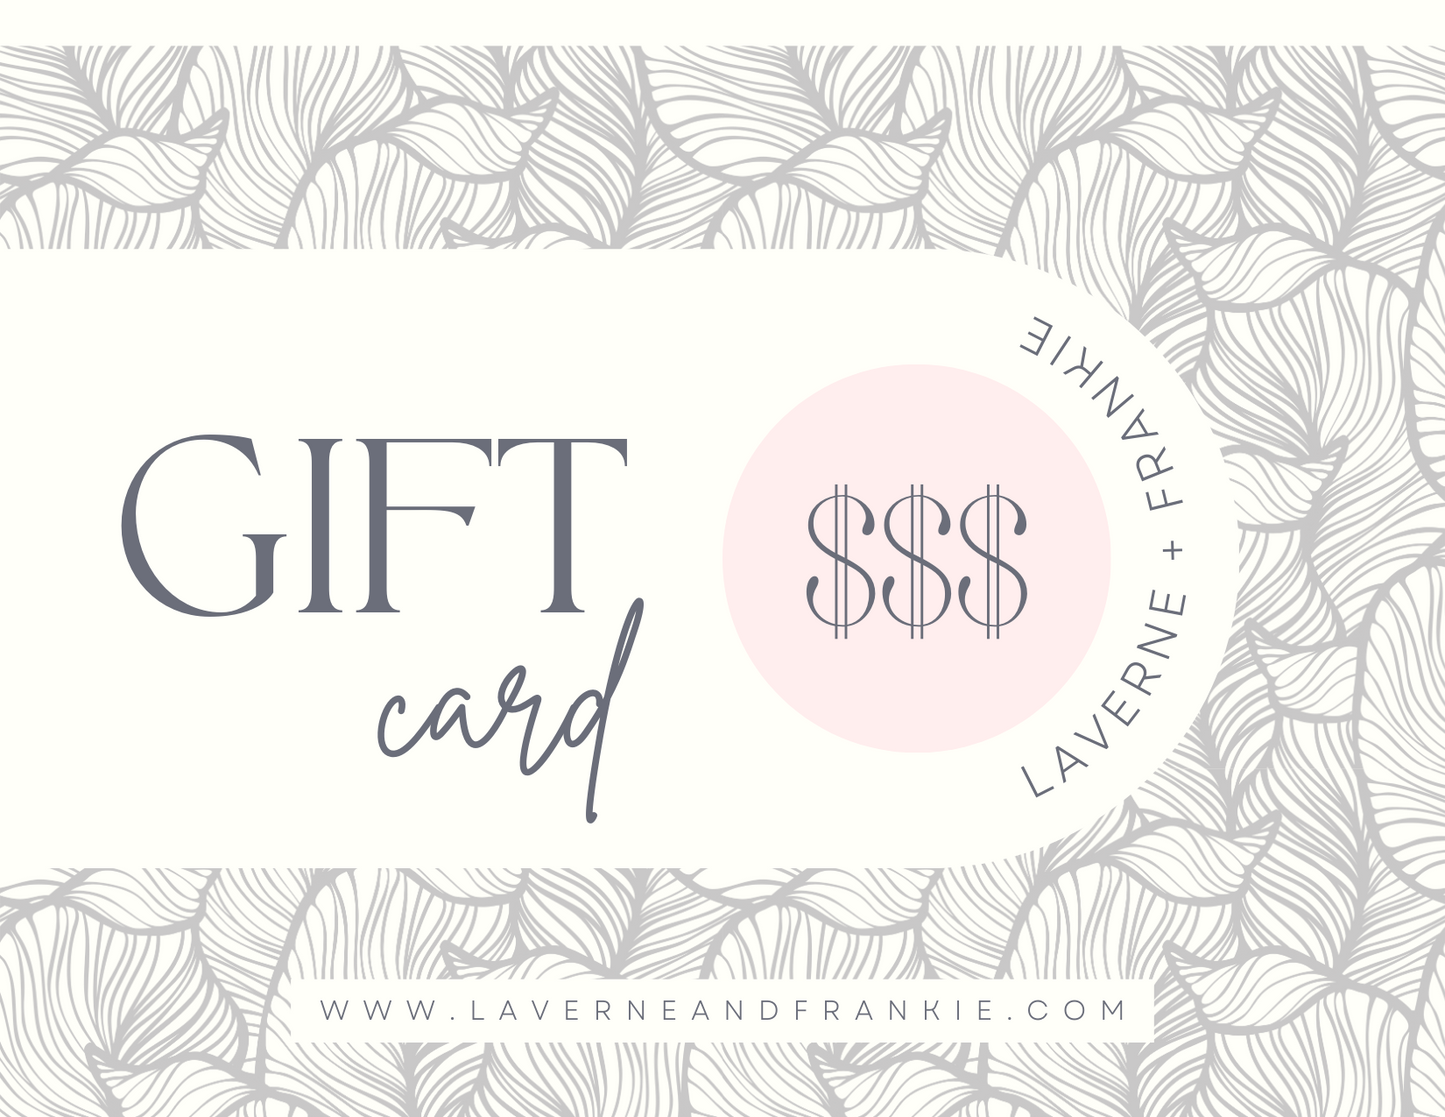 Laverne + Frankie Gift Cards!